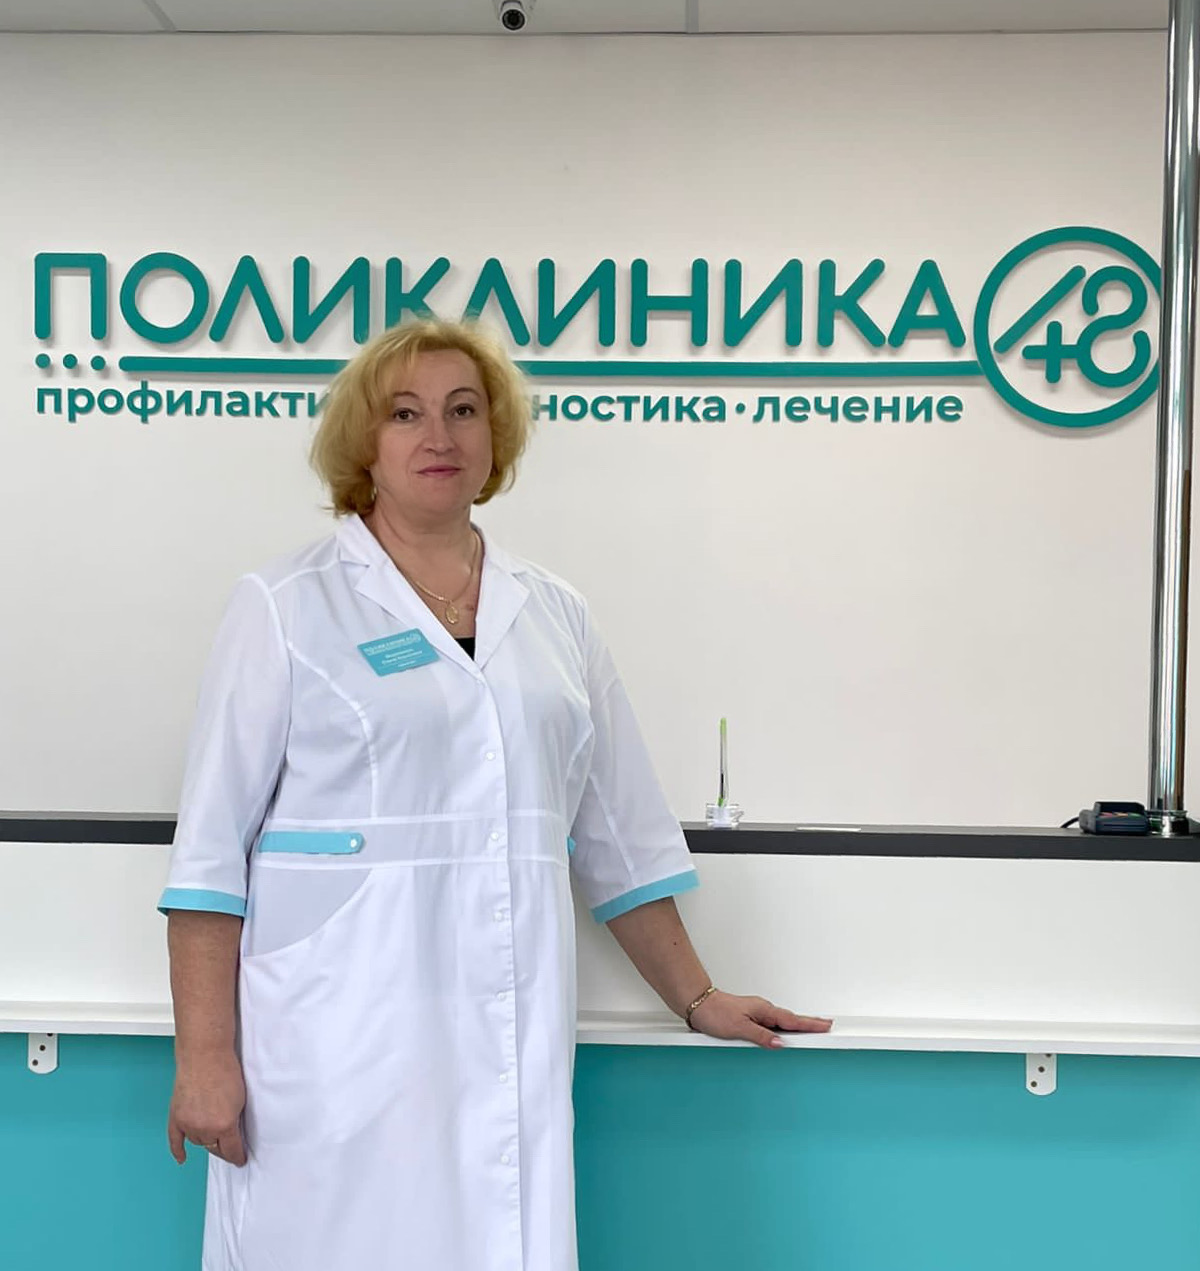 Морковкина Елена Борисовна